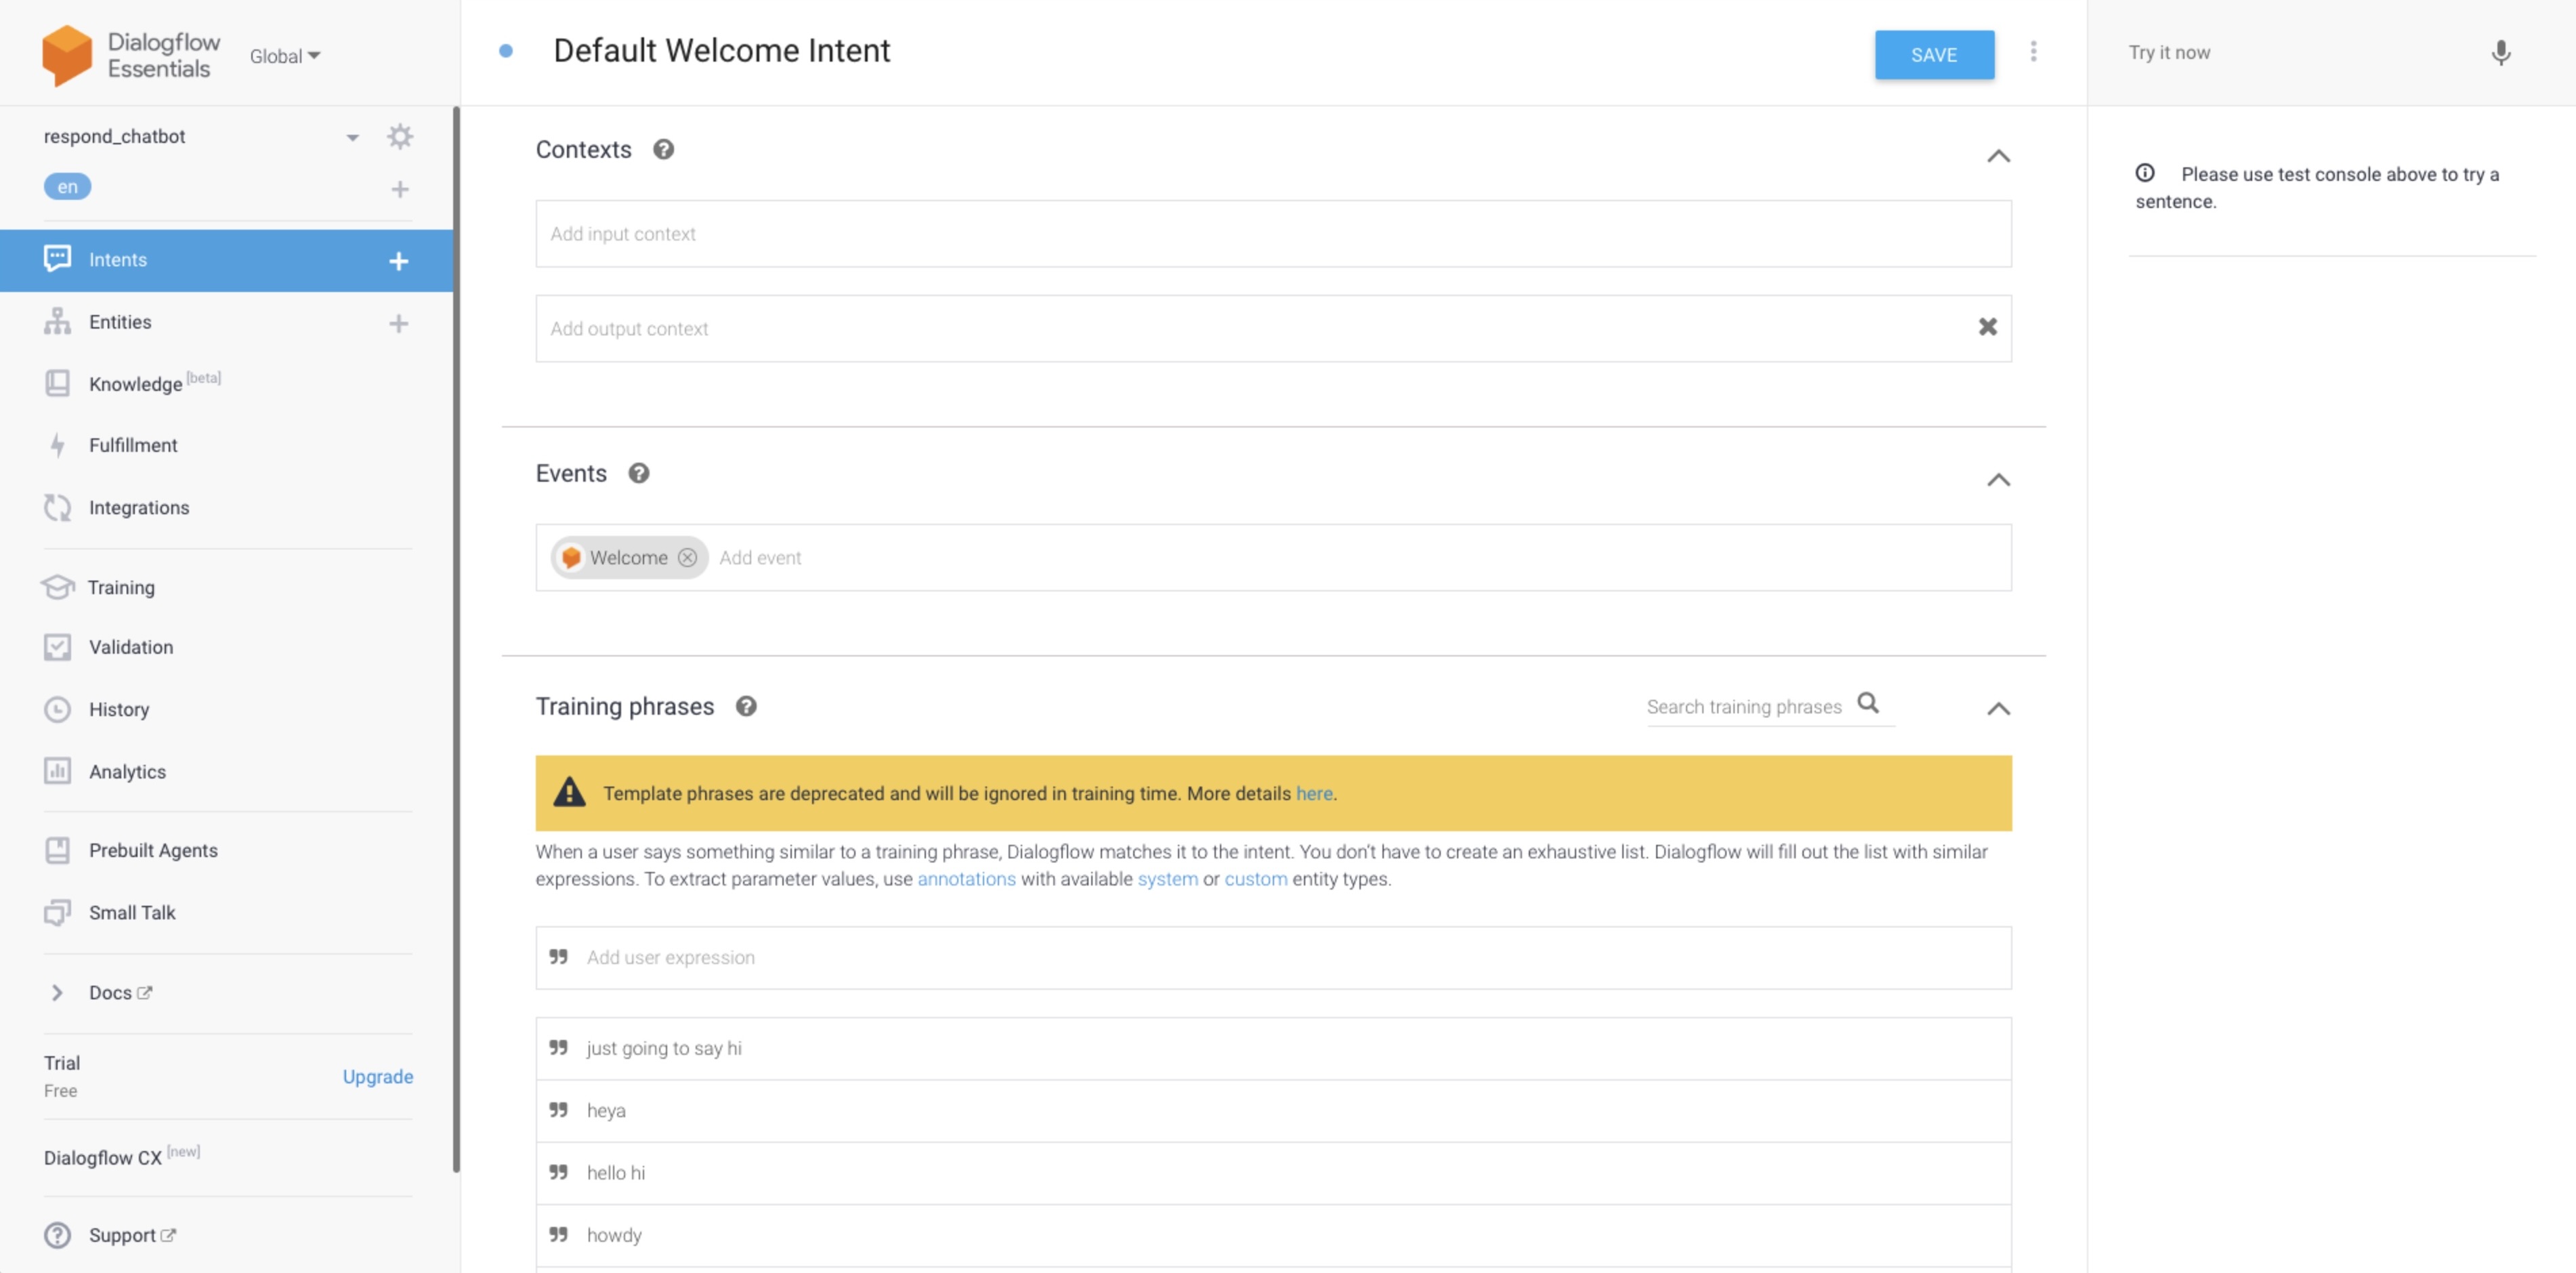 screenshot showing dialogflow default welcome intent